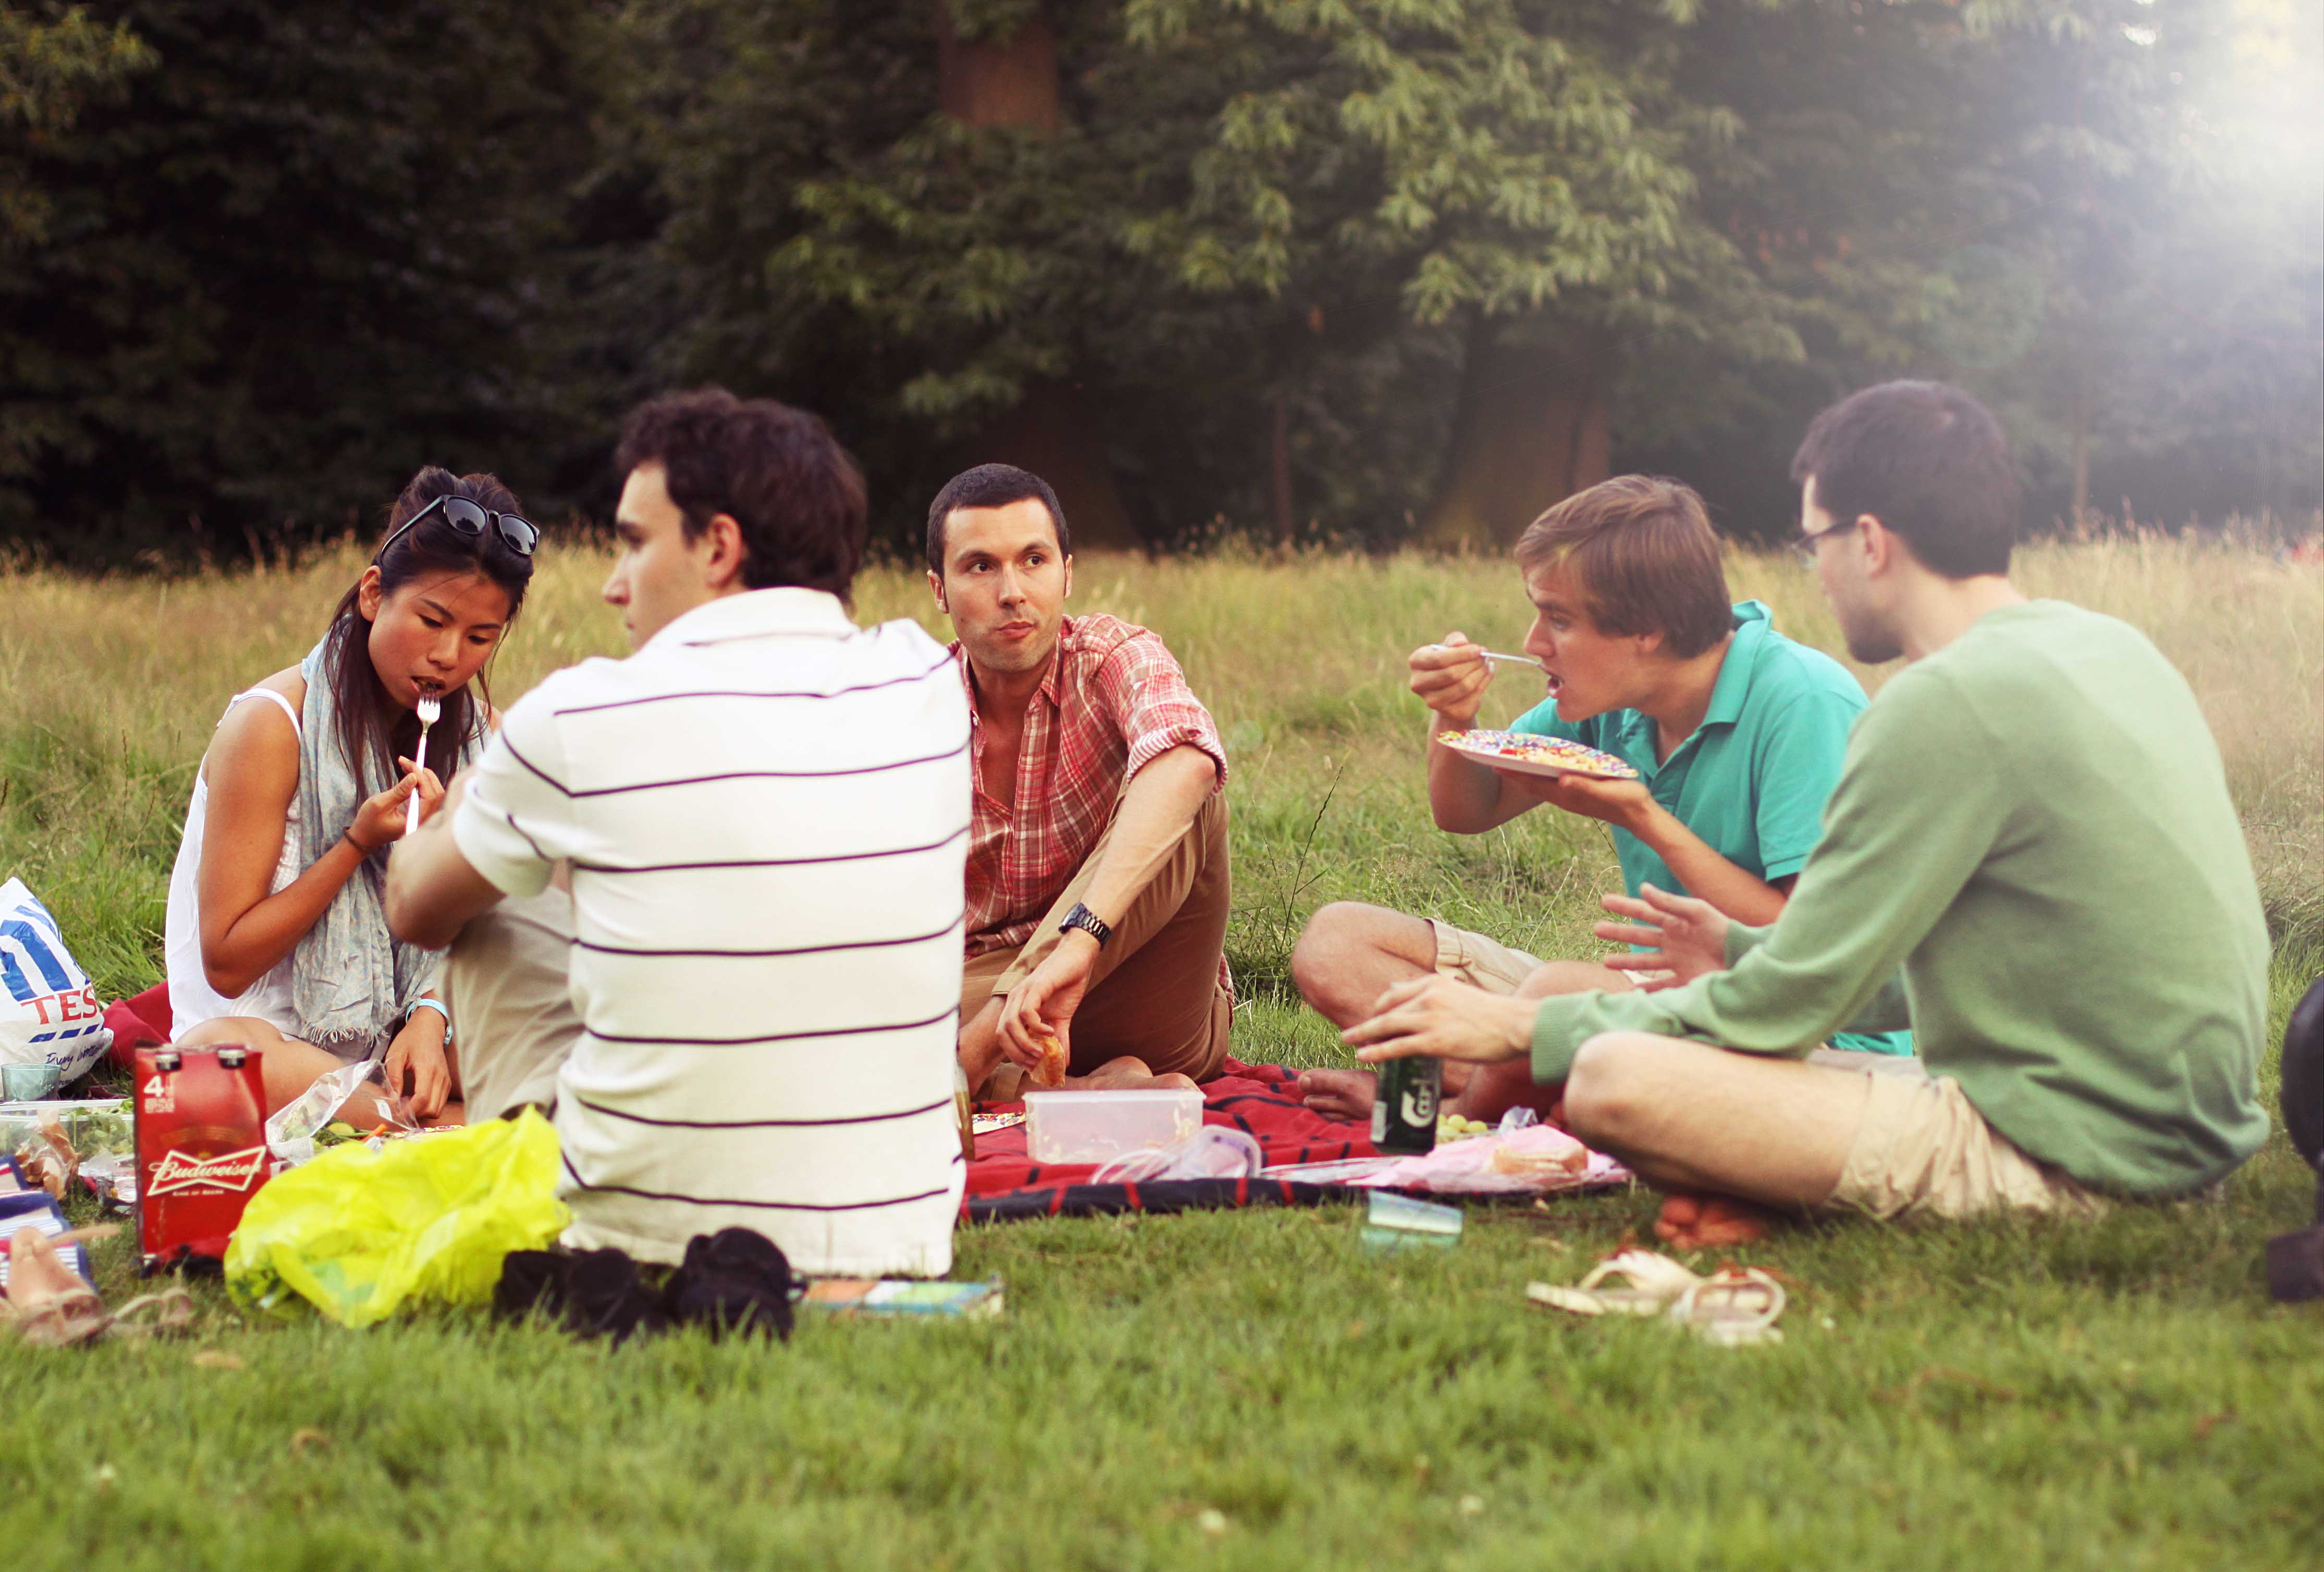 Группа нудистов на пикнике фото